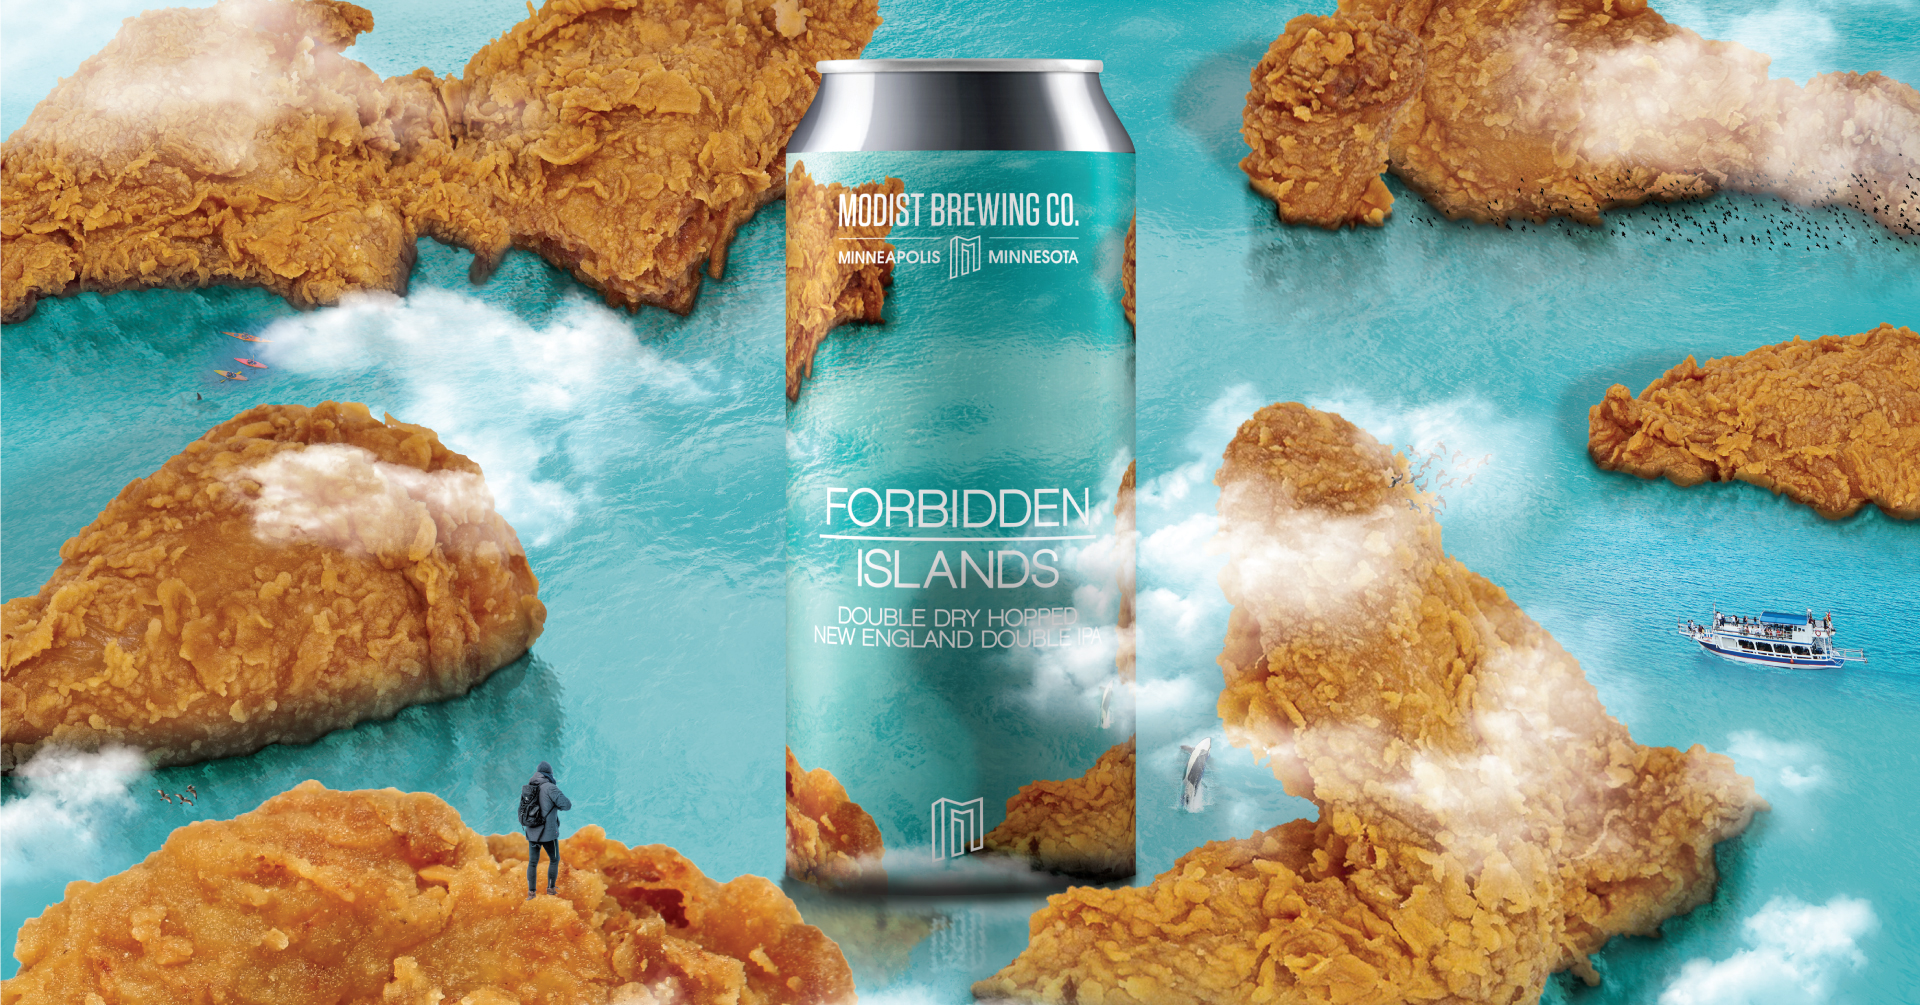 Forbidden Islands - Modist Brewing Co.